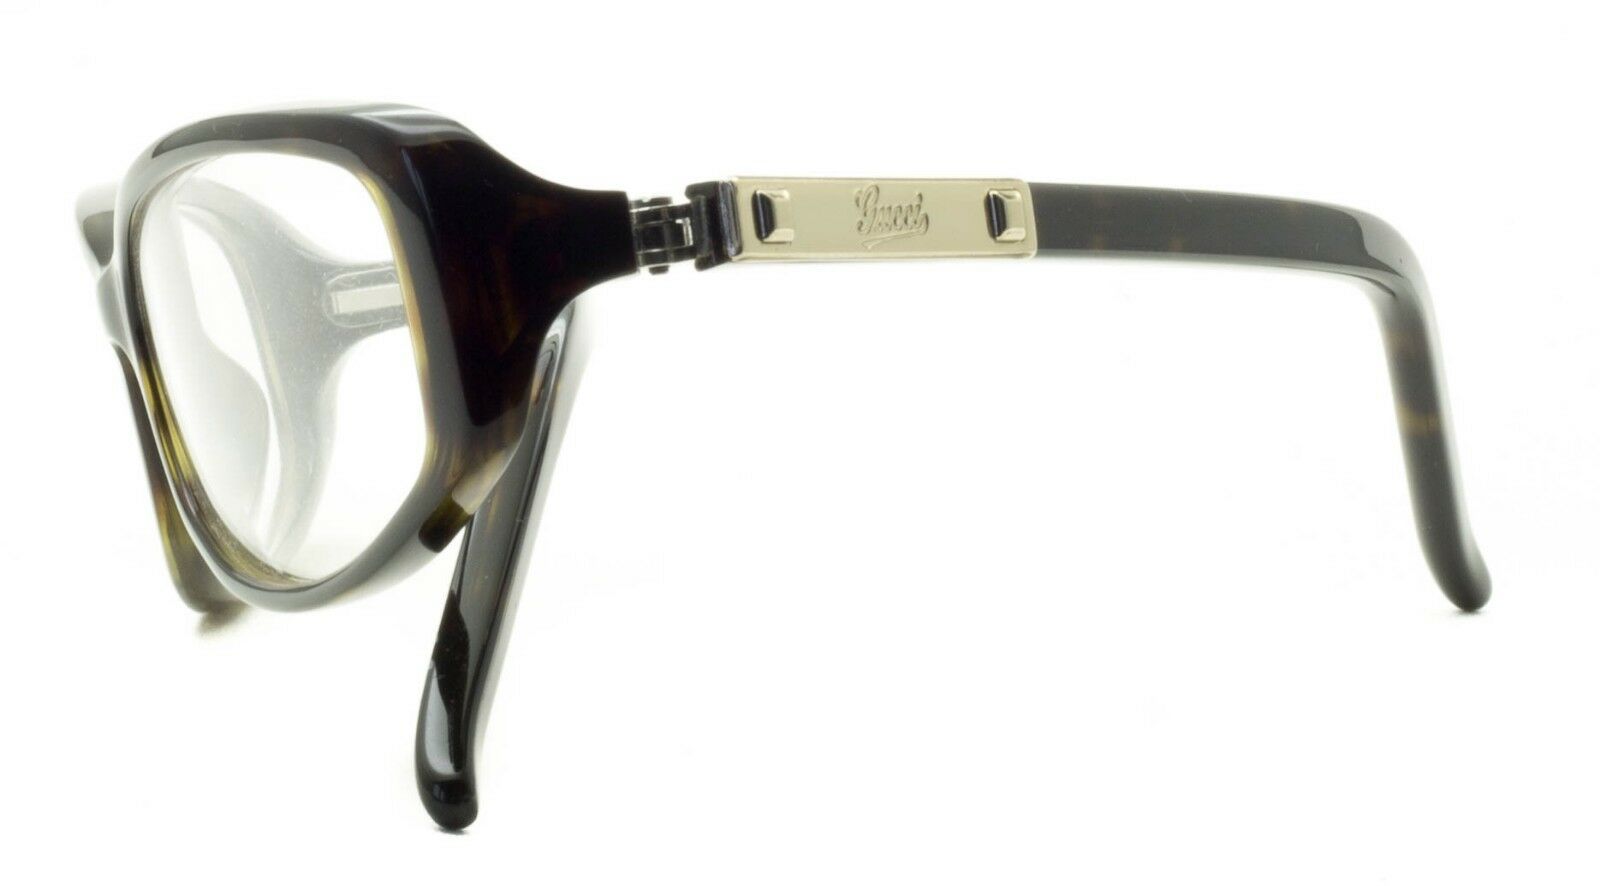 GUCCI GG 3072 086 Eyewear FRAMES NEW Glasses RX Optical Eyeglasses ITALY - BNIB